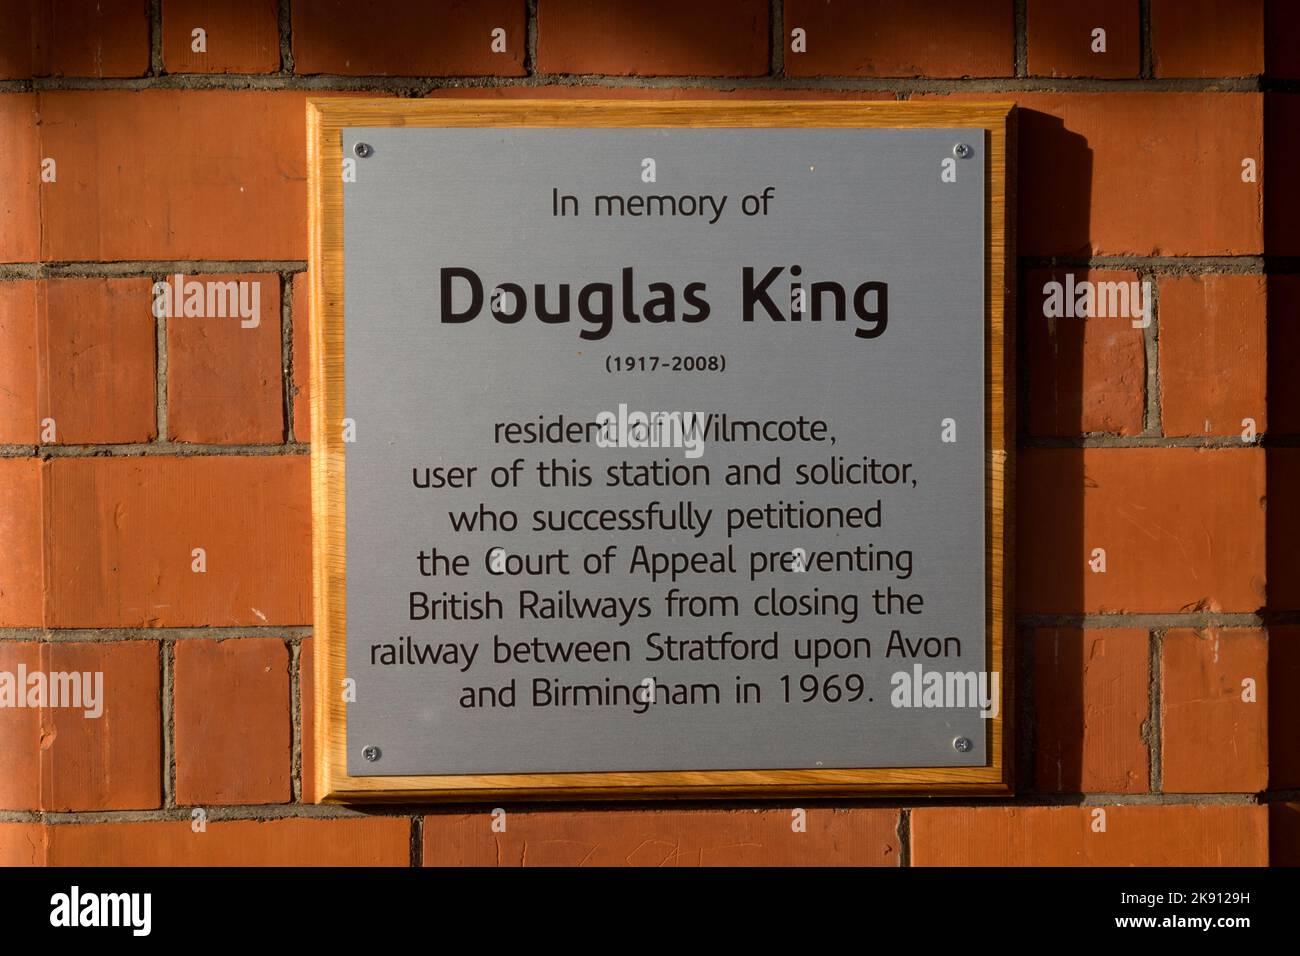 Douglas King Memorial Plaque, stazione ferroviaria di Wilmcote, Warwickshire, Inghilterra, Regno Unito Foto Stock